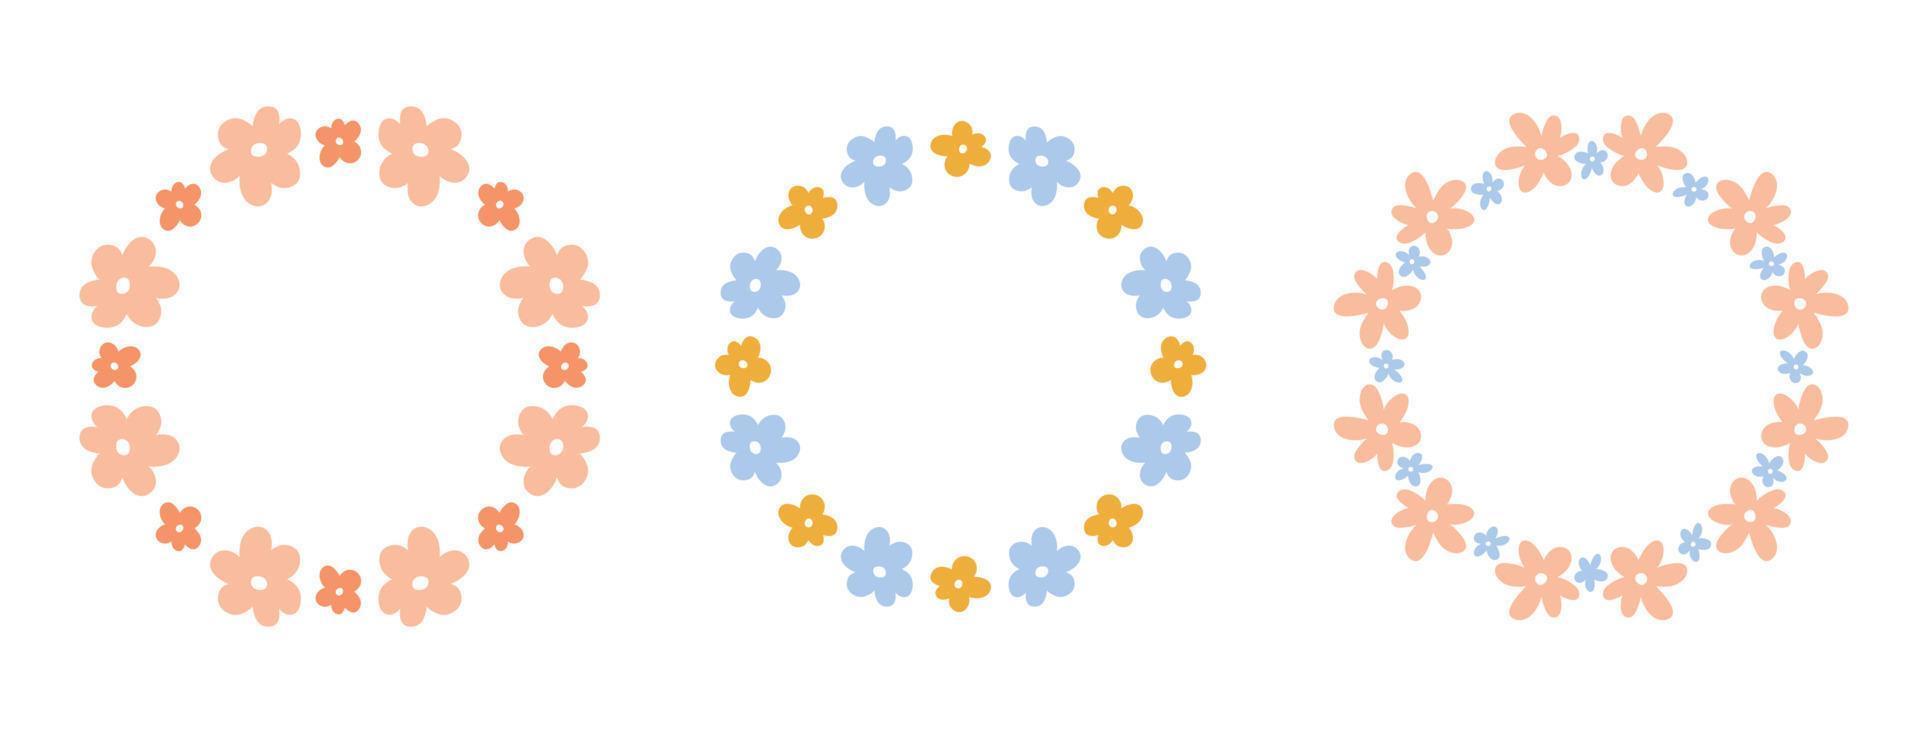 conjunto de bonitas coronas florales con diminutas flores aisladas en fondo blanco. ilustración plana vectorial dibujada a mano. perfecto para tarjetas, invitaciones, decoraciones, logo, varios diseños. vector